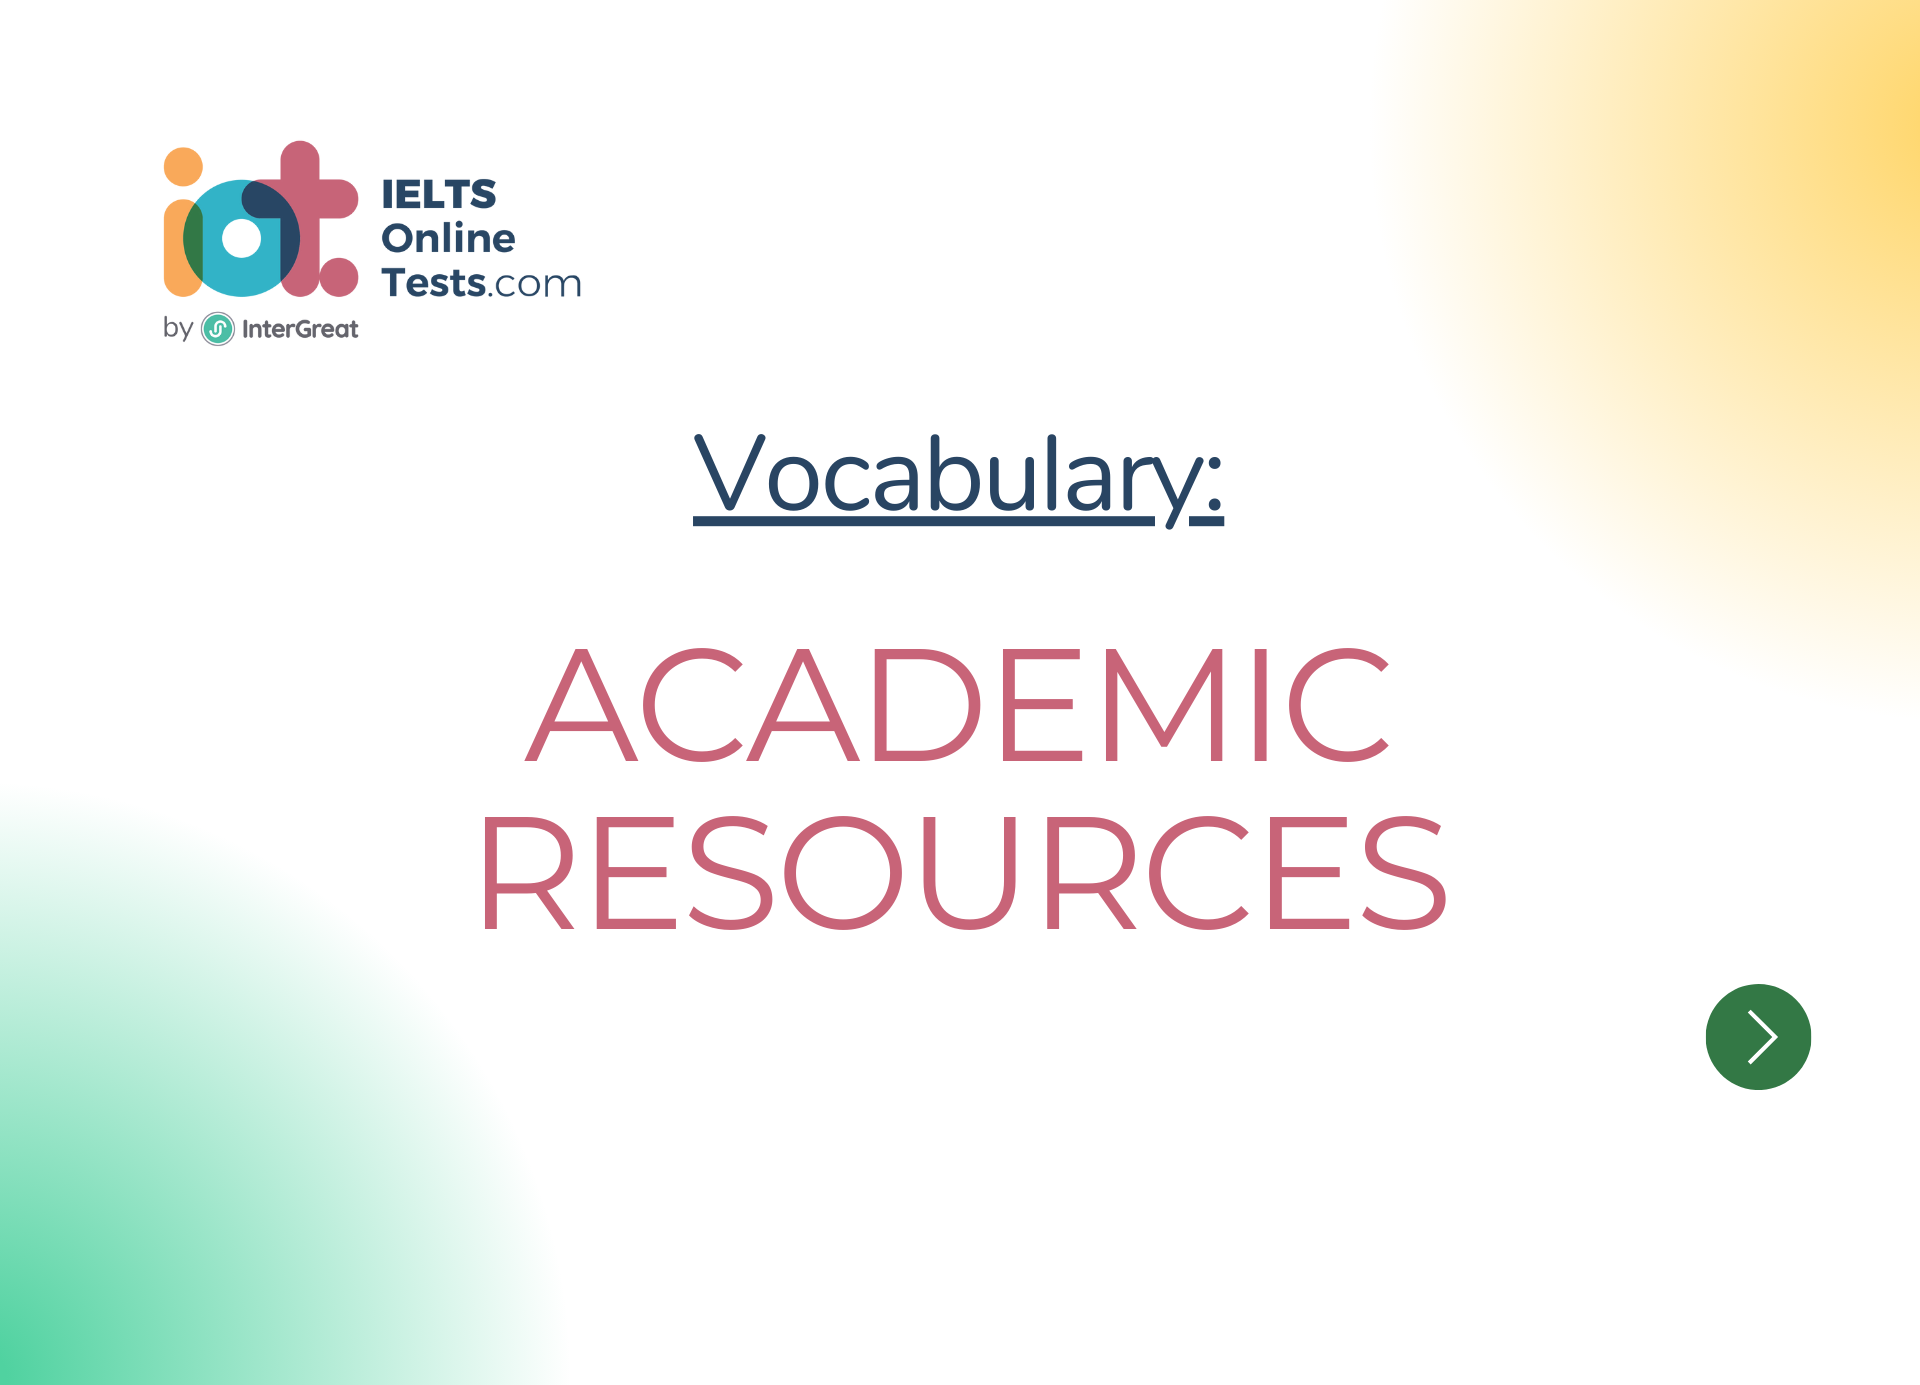 Academic resources